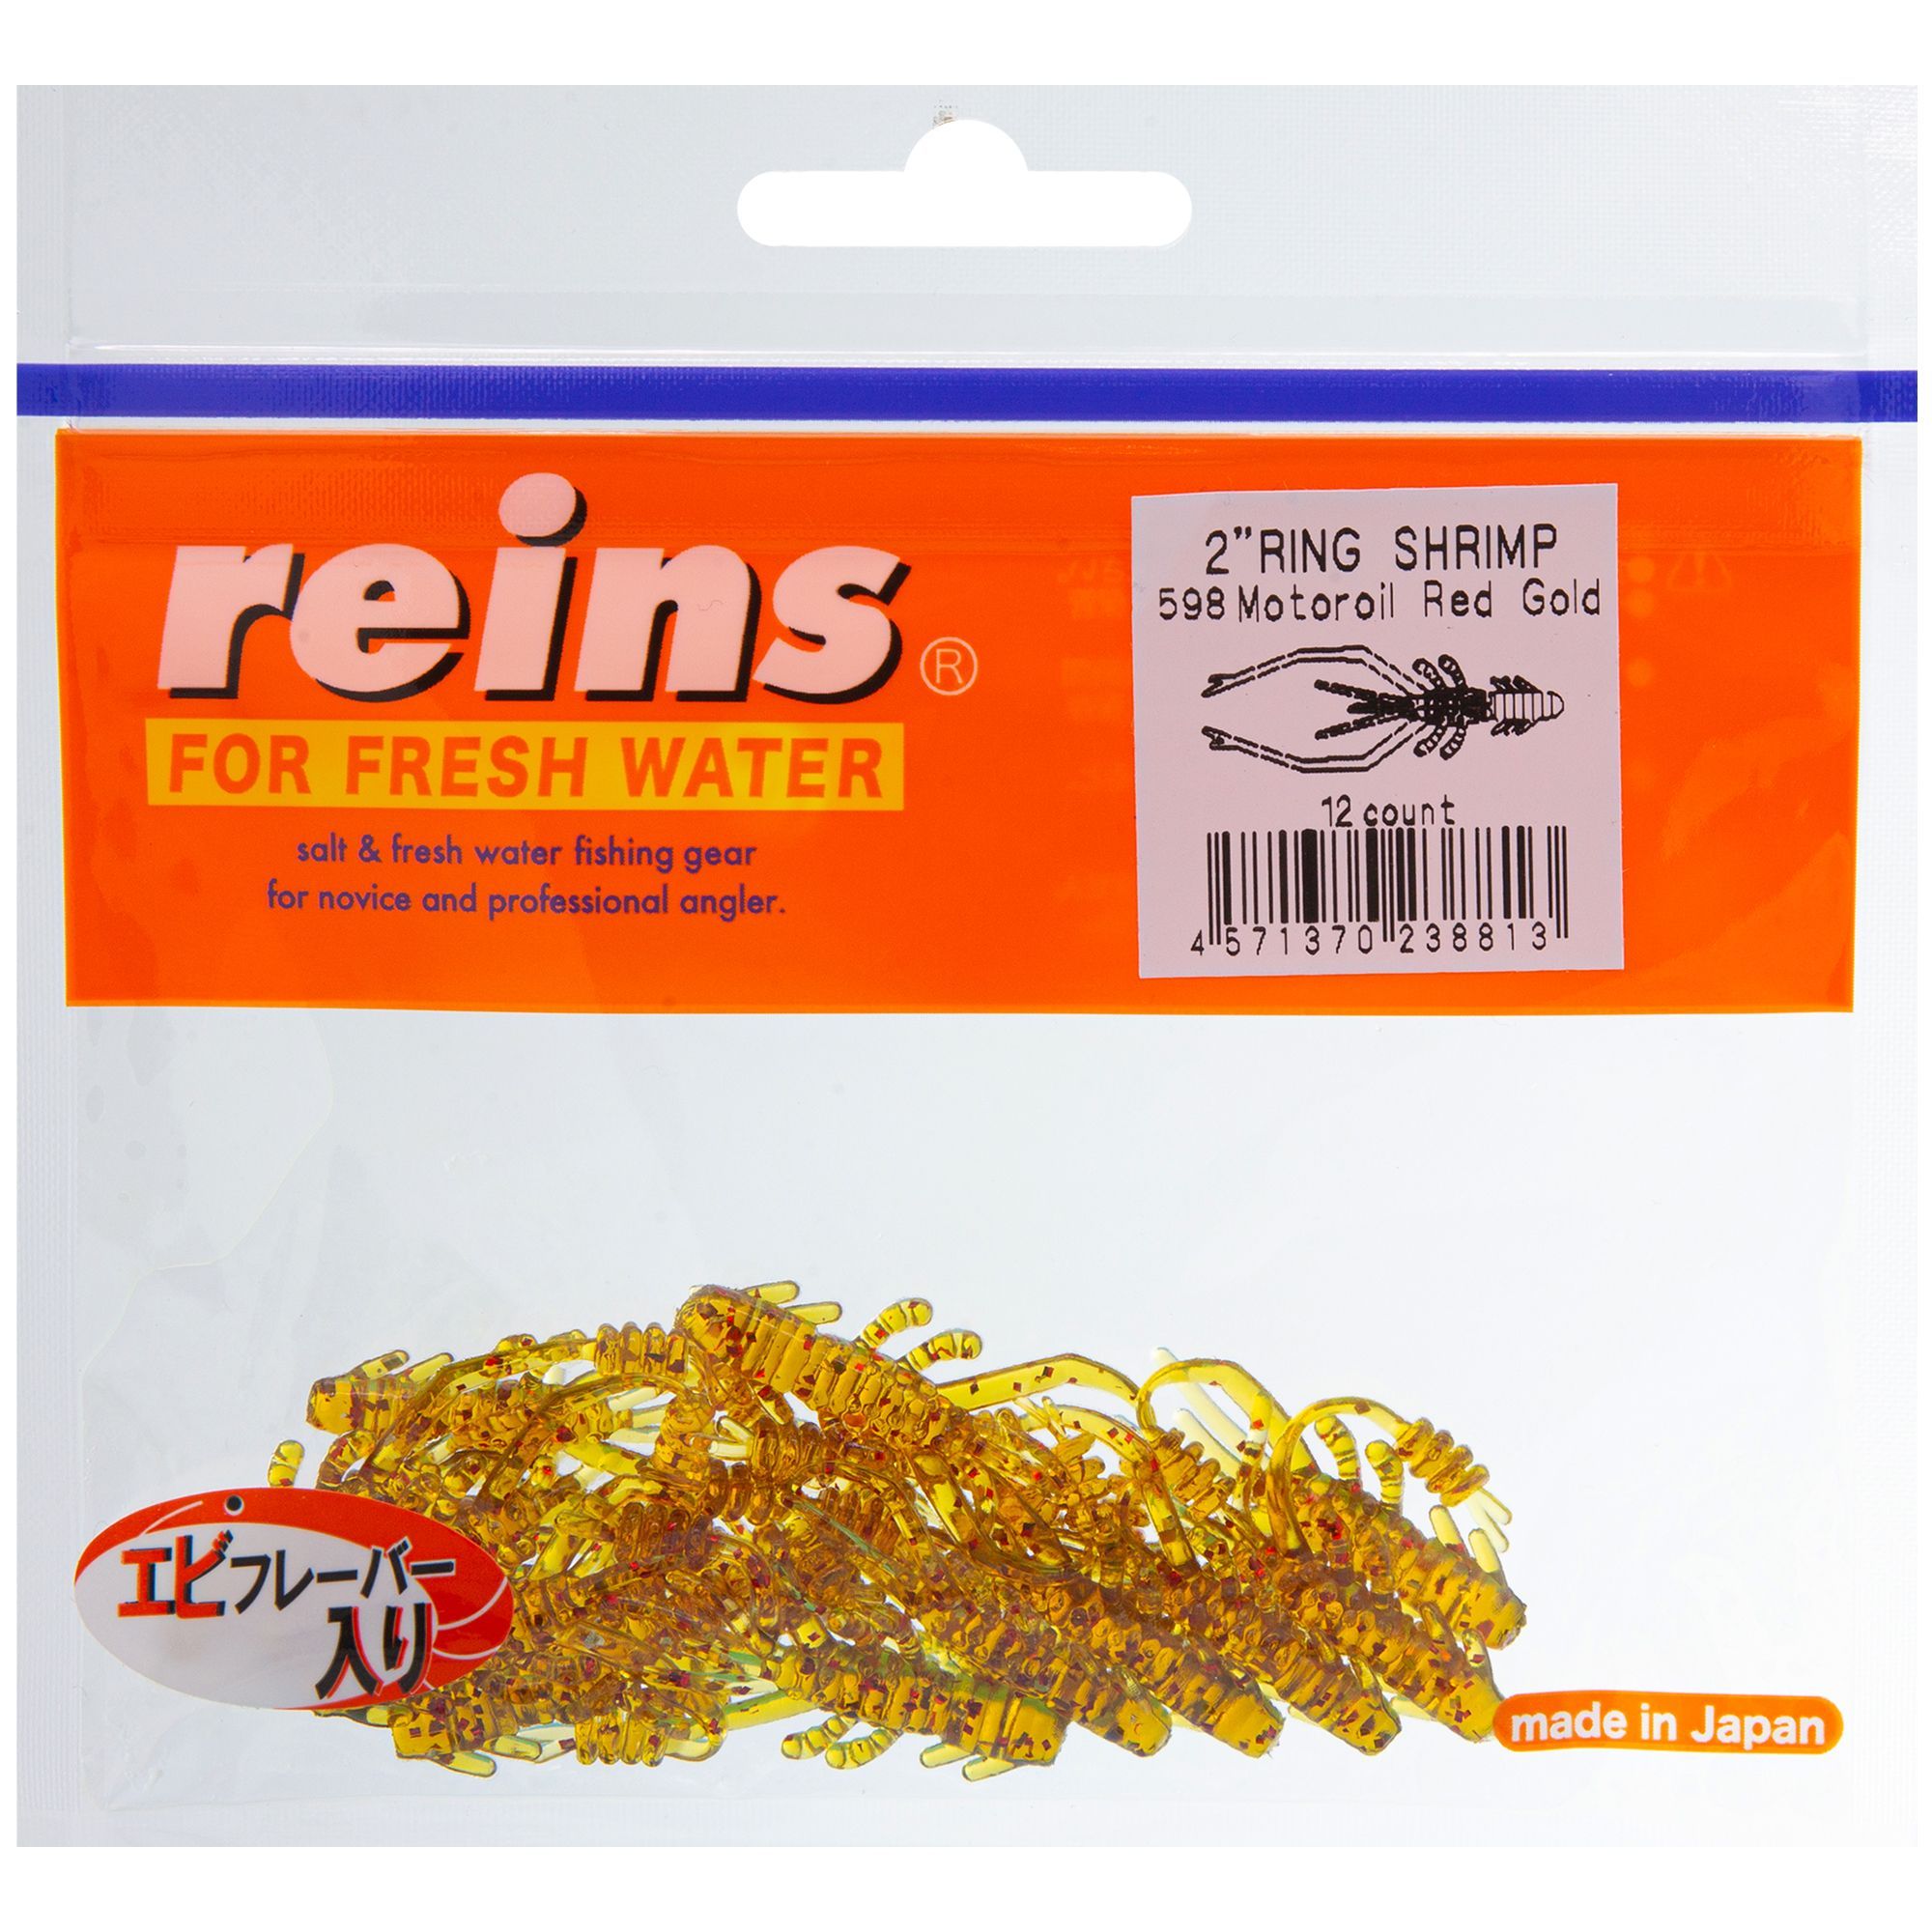 Силиконовая приманка Reins Ring Shrimp 50 мм цвет 598 Motor Oil Red Gold 12 шт